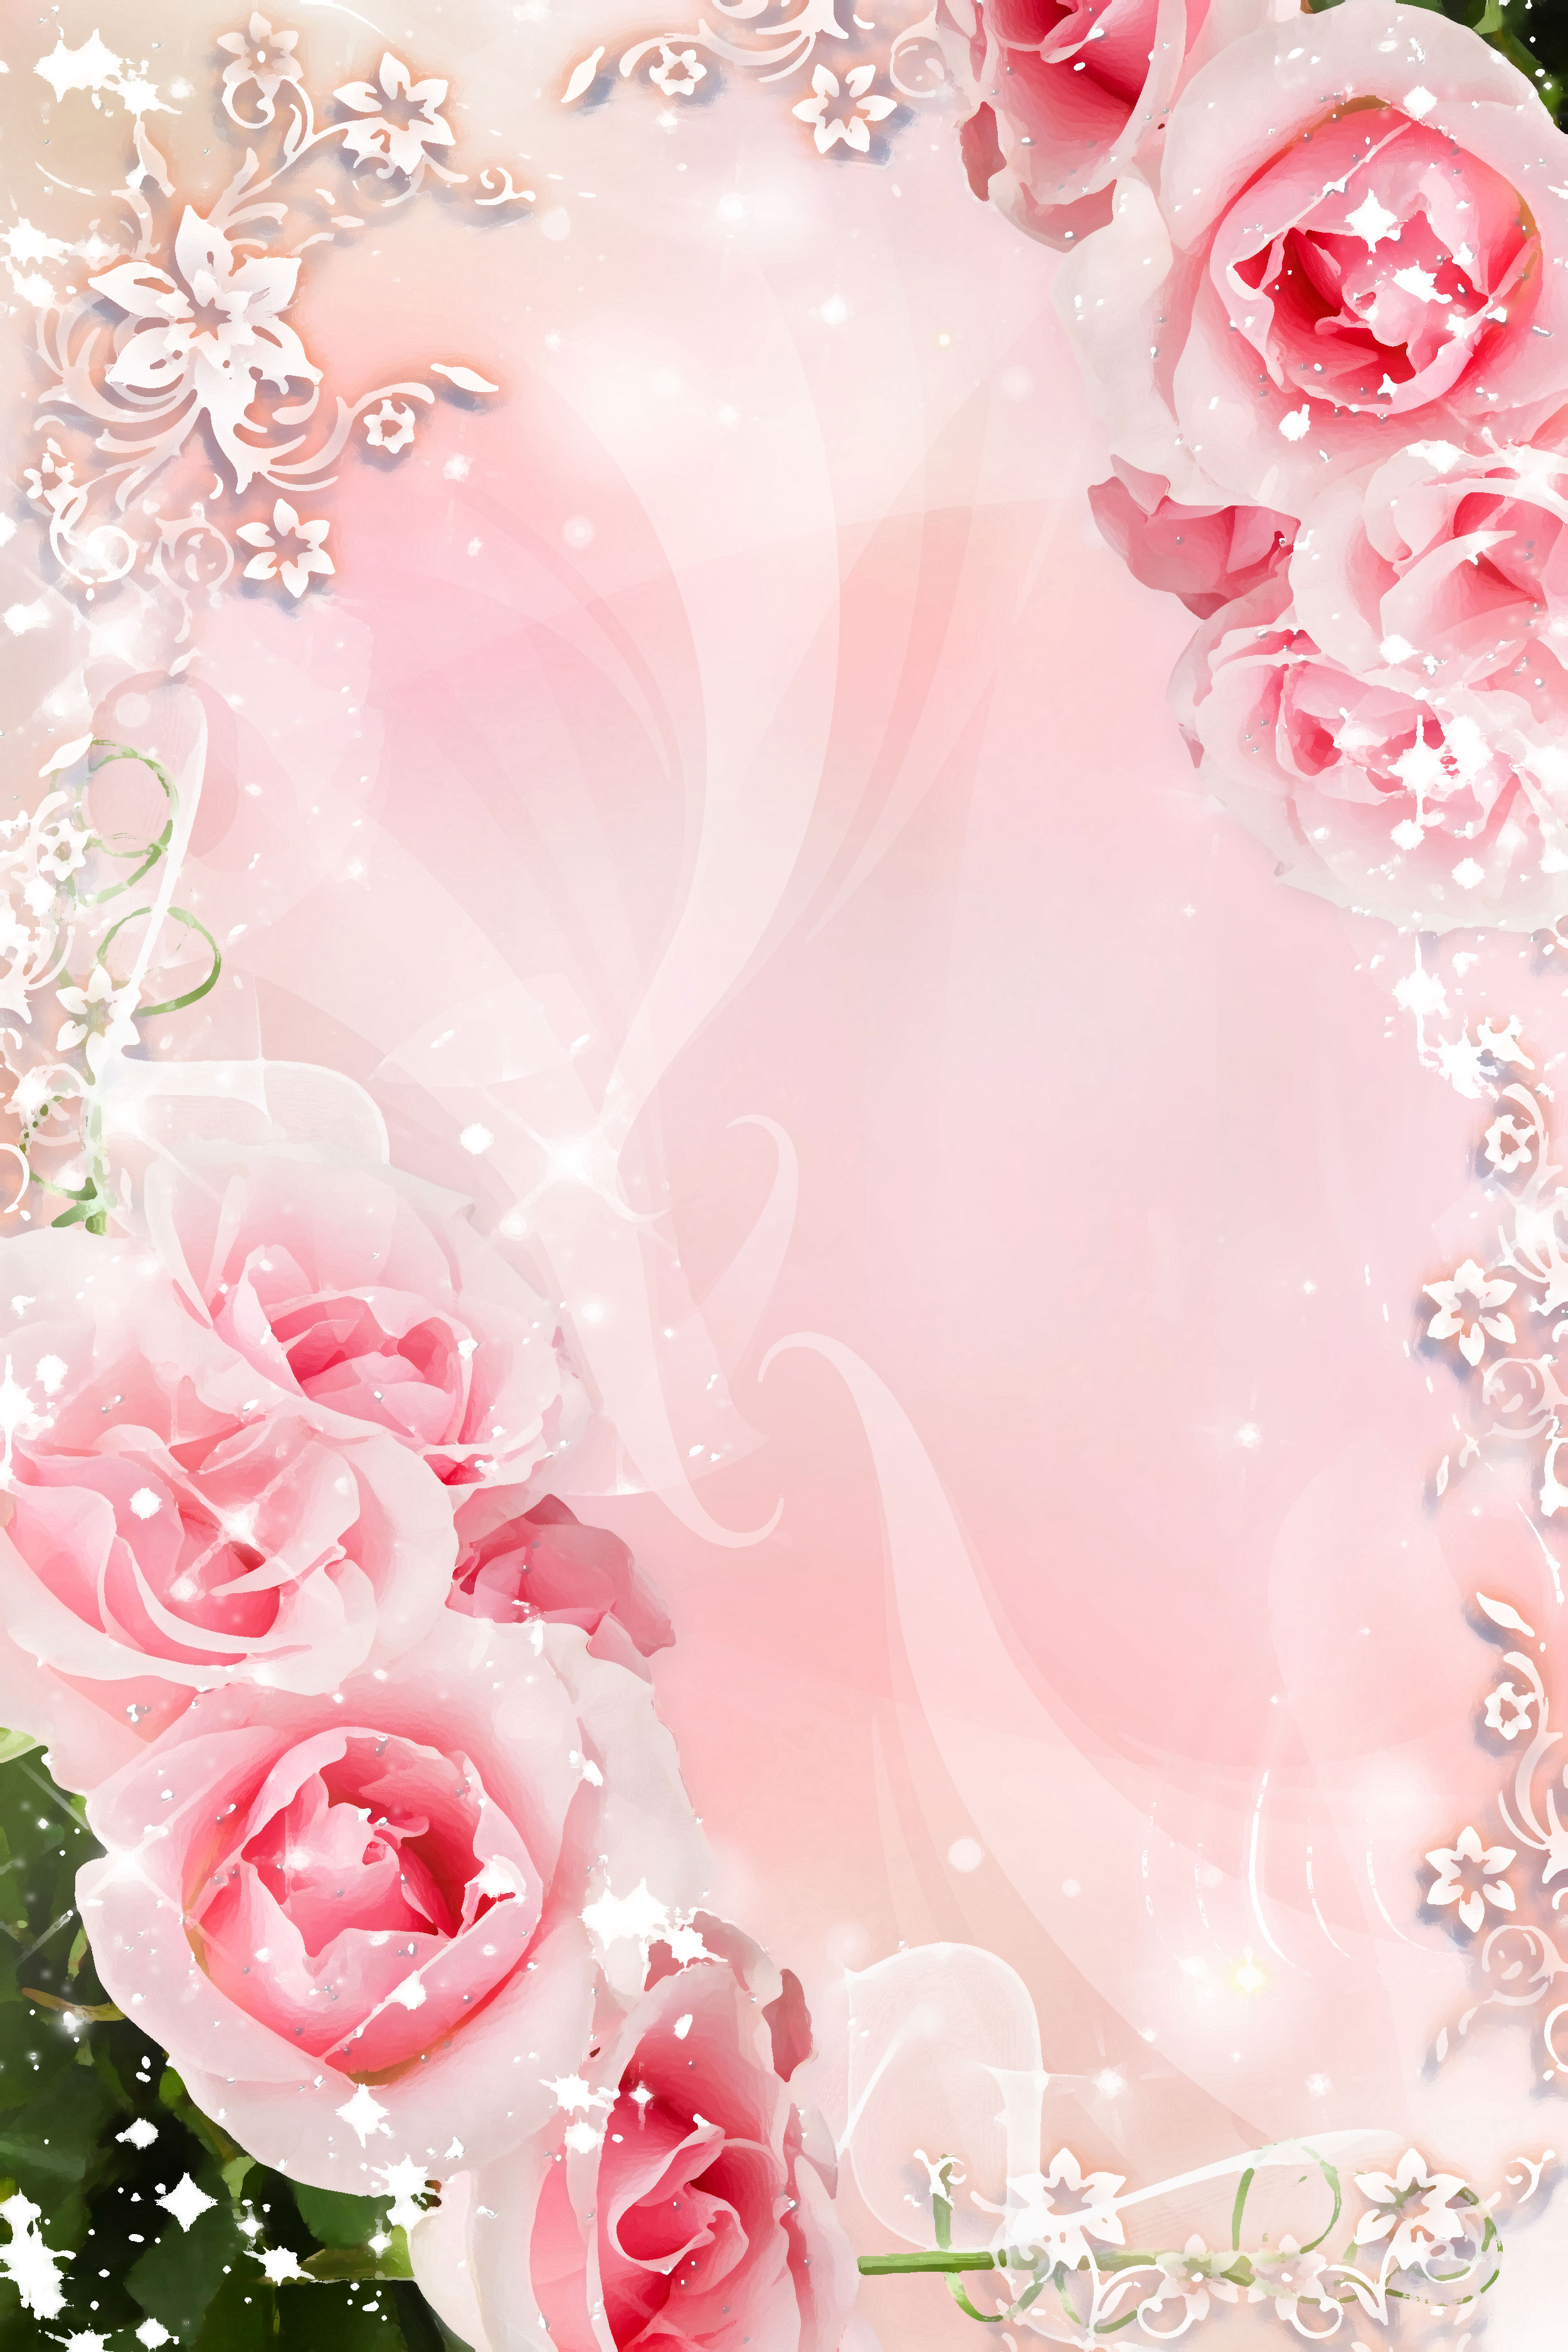 バラの画像・イラスト『壁紙・背景用』／No.620『ピンク・バラ・エレガント』